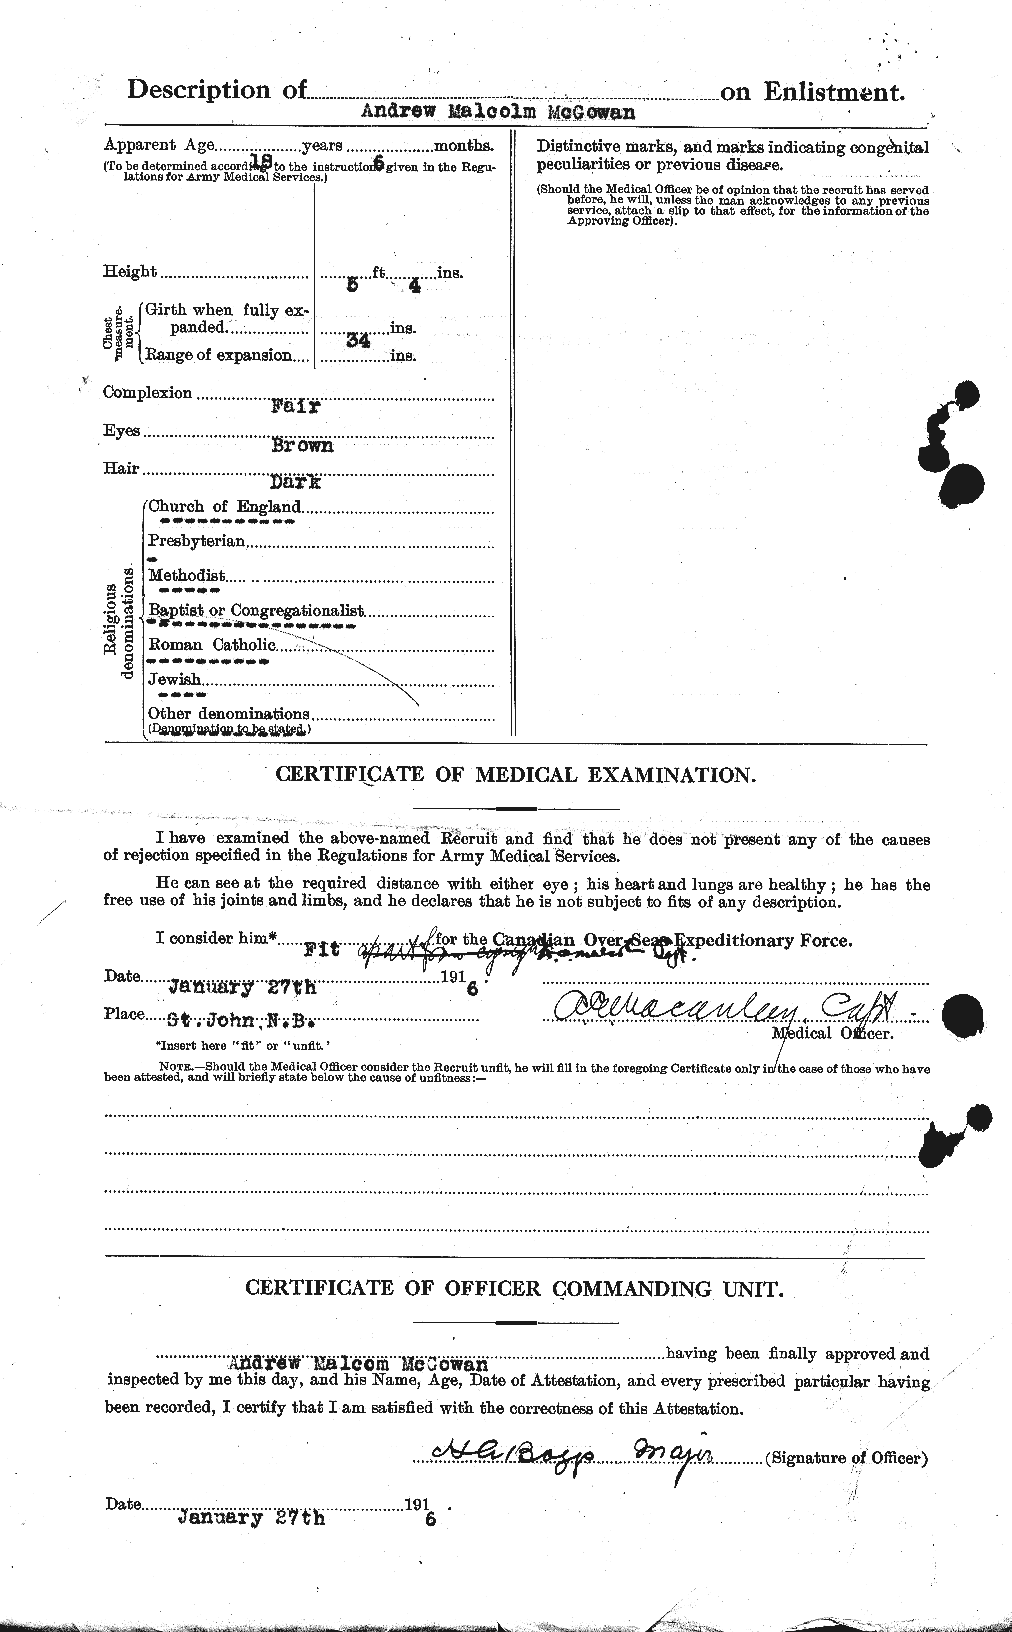 Dossiers du Personnel de la Première Guerre mondiale - CEC 522540b